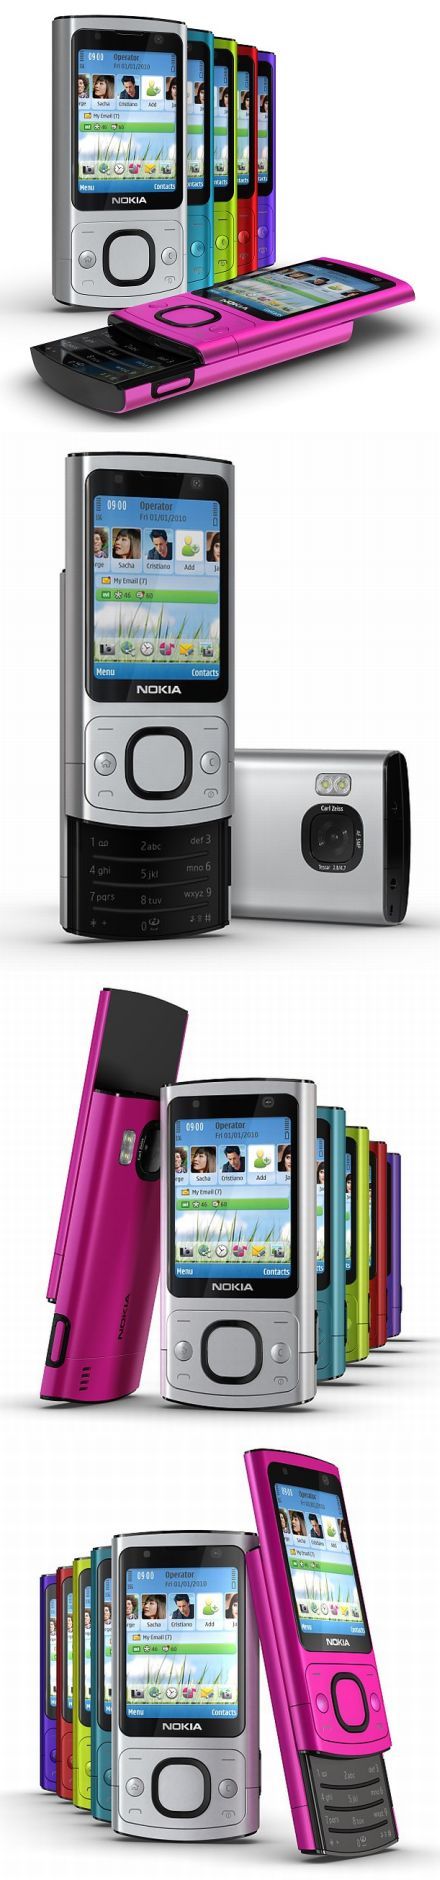 Újdonságok: Nokia 6800 Slide és Nokia 7230